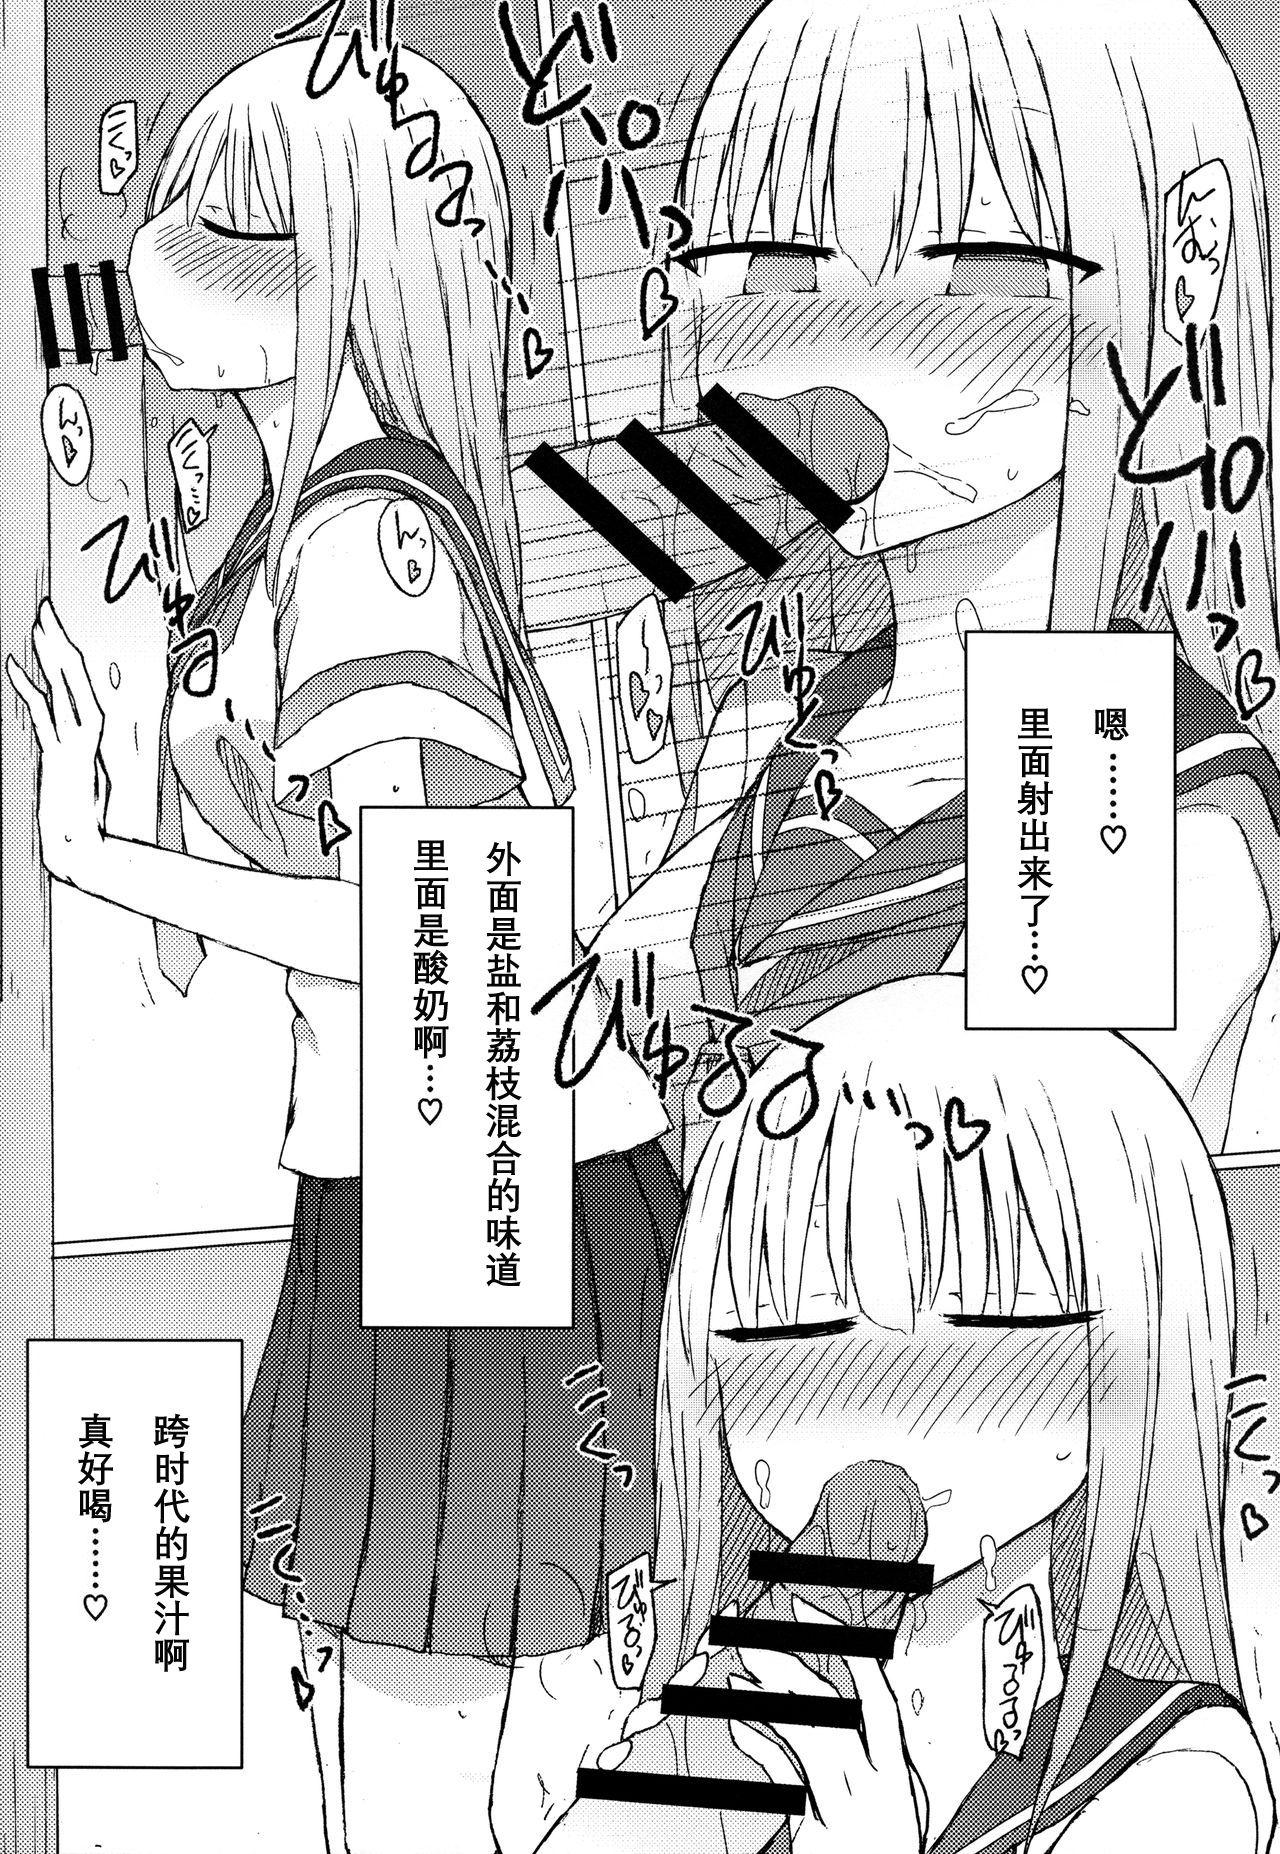 Cheerleader Atsui kara Jihanki de Juice o Kaou to Shitara Chinchin Igai Urikireteta. - Original Face - Page 10